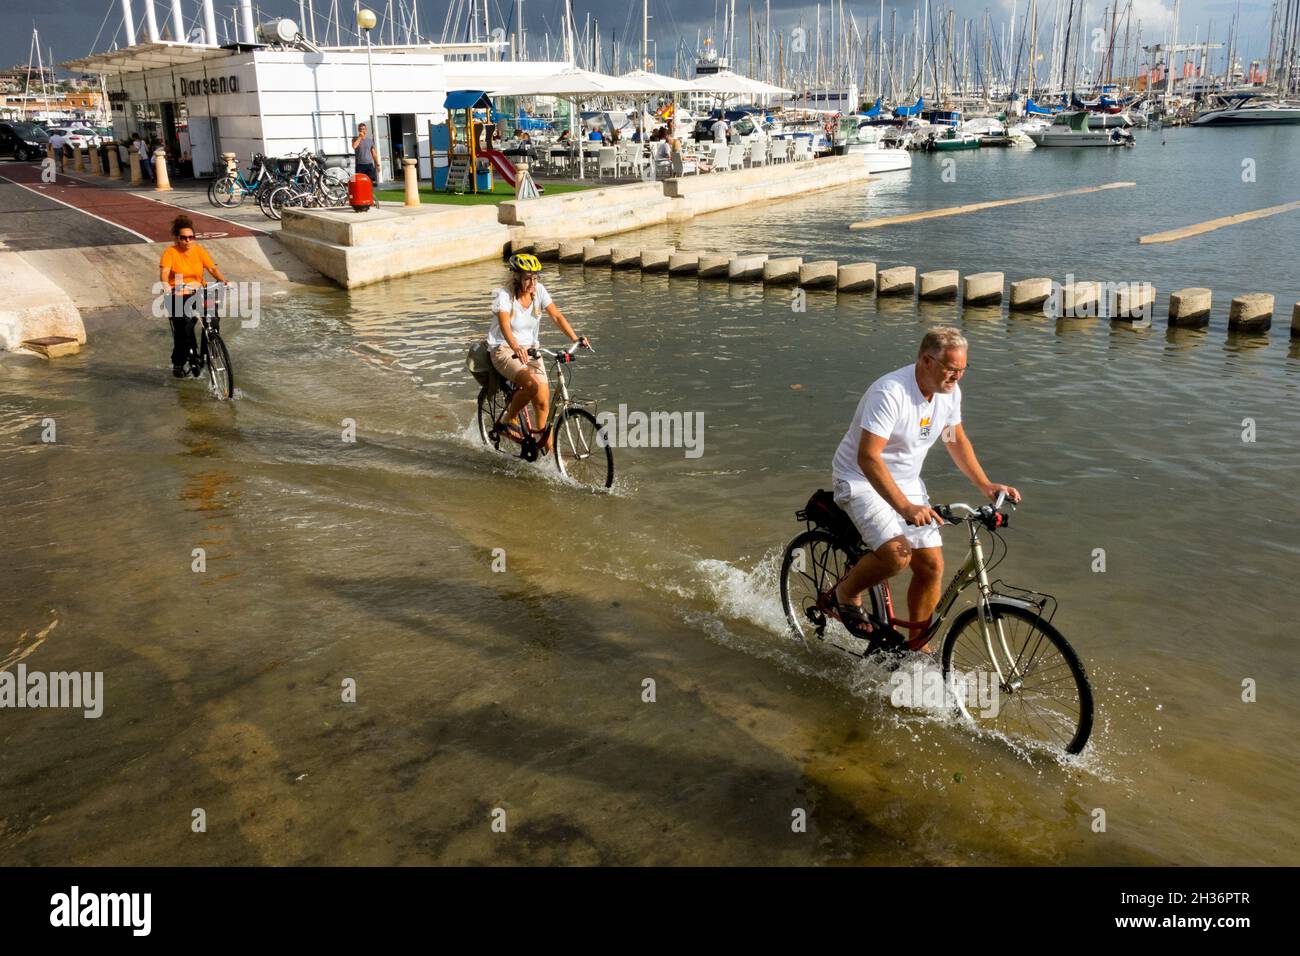 Les touristes à vélo traversent l'eau dans le port de Palma de Majorque port de plaisance Espagne Banque D'Images